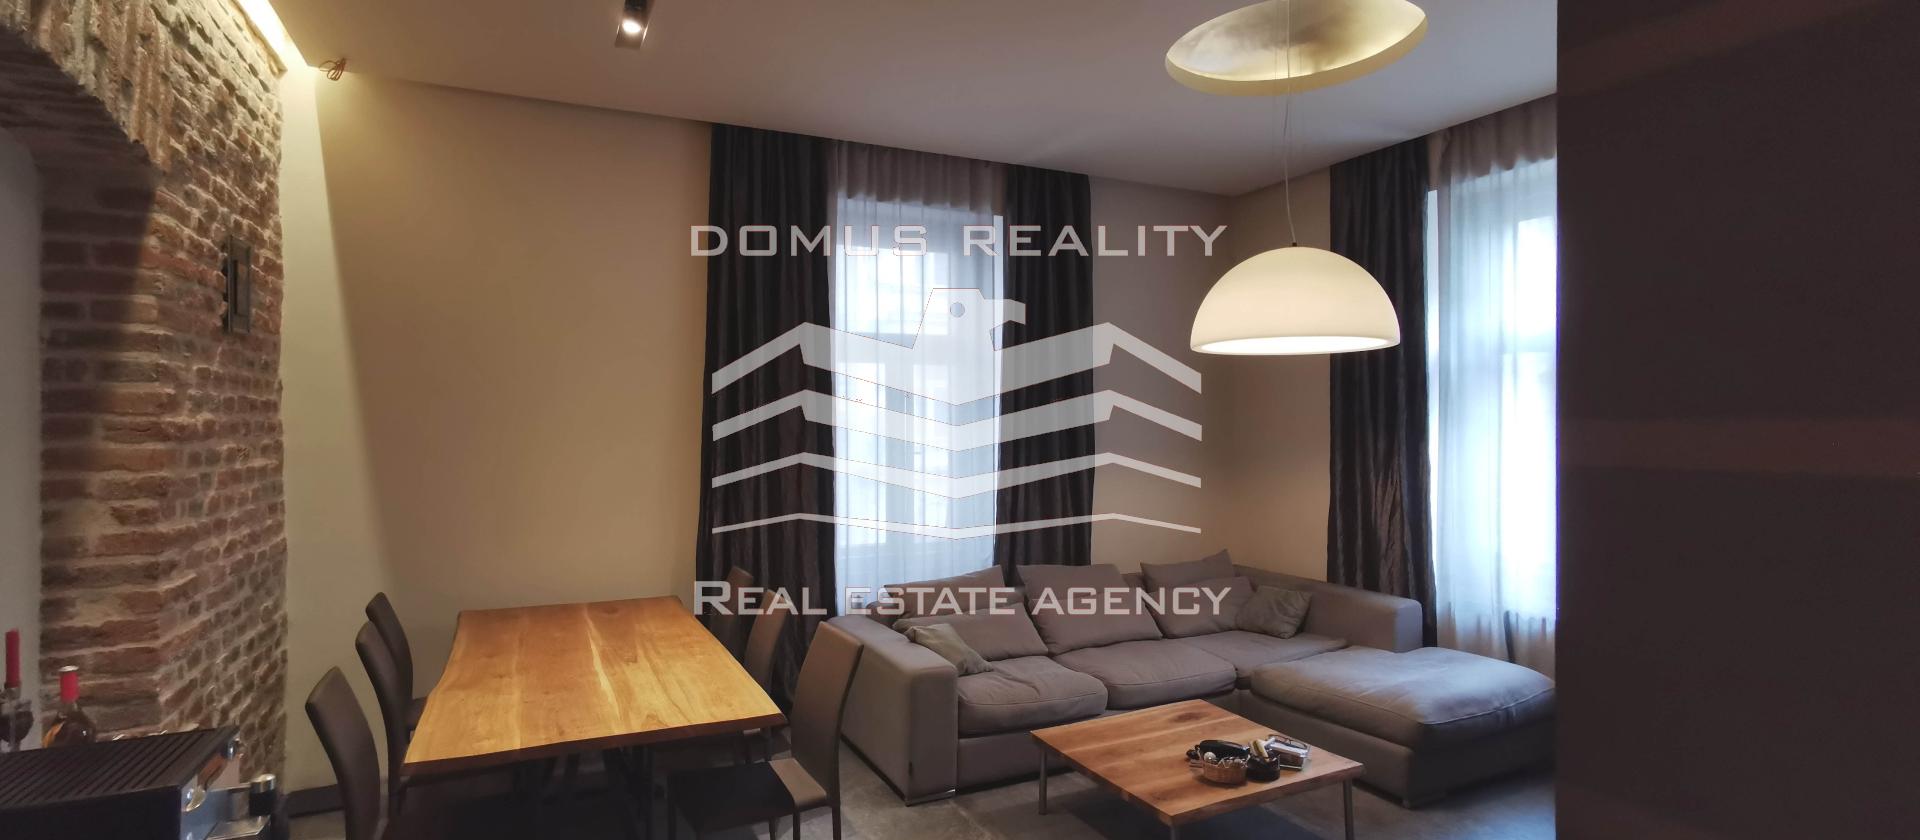 Společnost Domus Reality v exkluzivním zastoupení majitele nabízí k prodeji kompletně zrekonstruovaná byt 3+kk s celkovou plochou 63 m2.